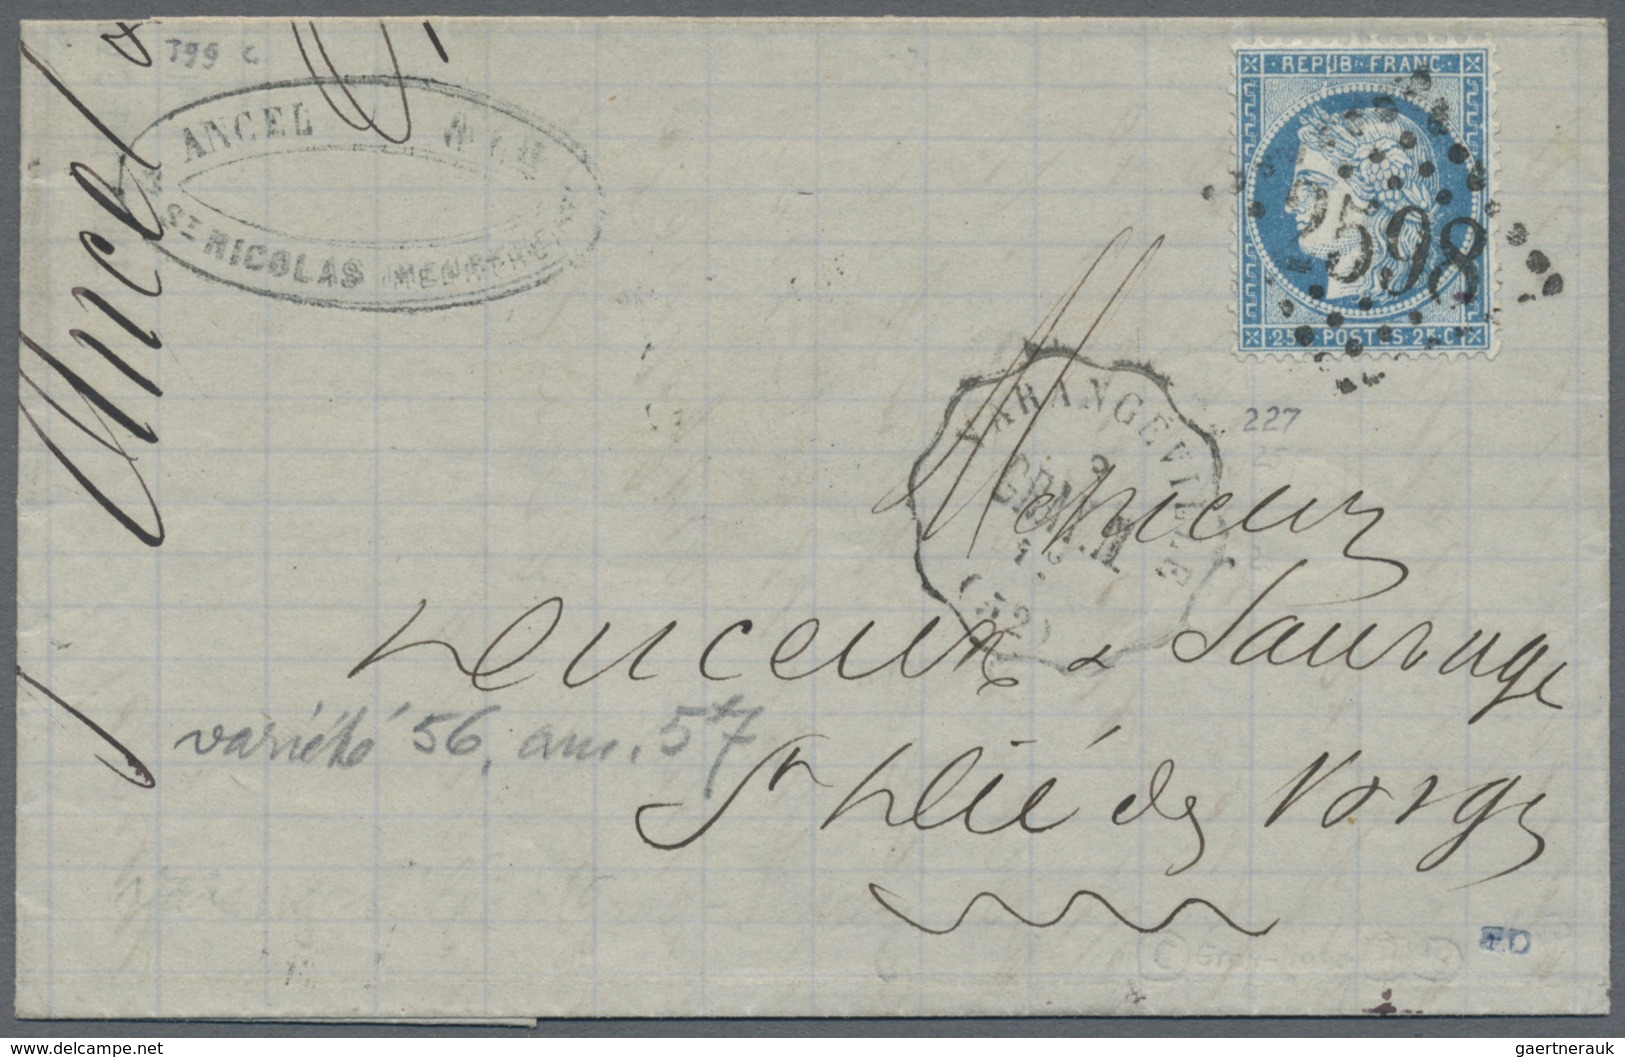 Br Frankreich: 1798/1876, schöner kleiner Bestand von Vorphilabriefen sowie Ceres und Napoleon-Frankatu